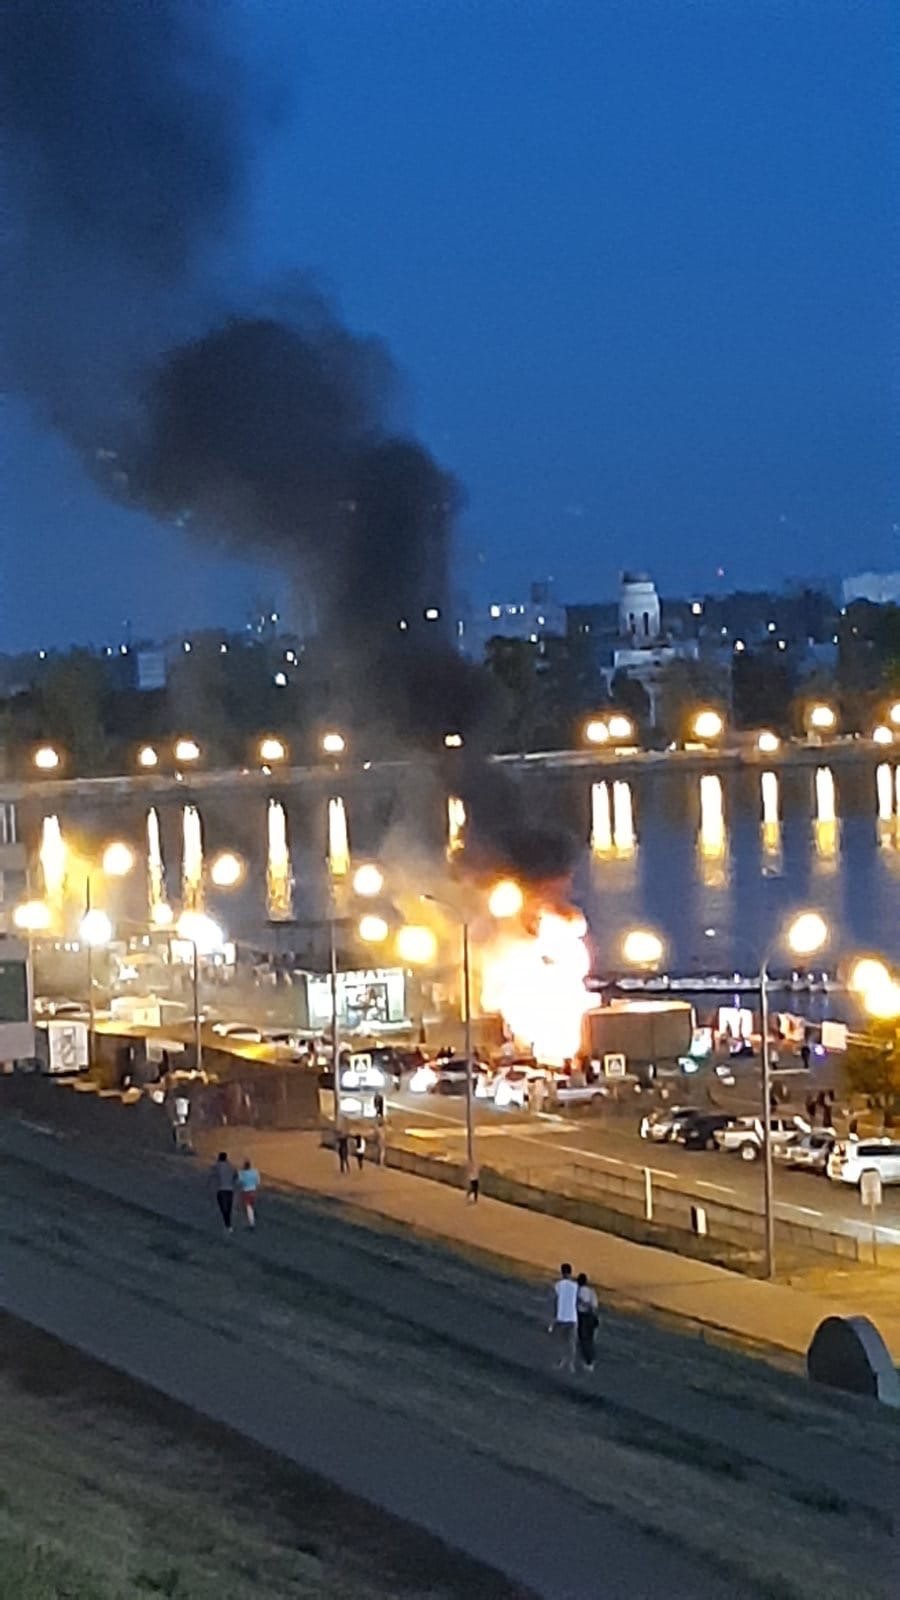 

На набережной Ижевска вспыхнул пожар

